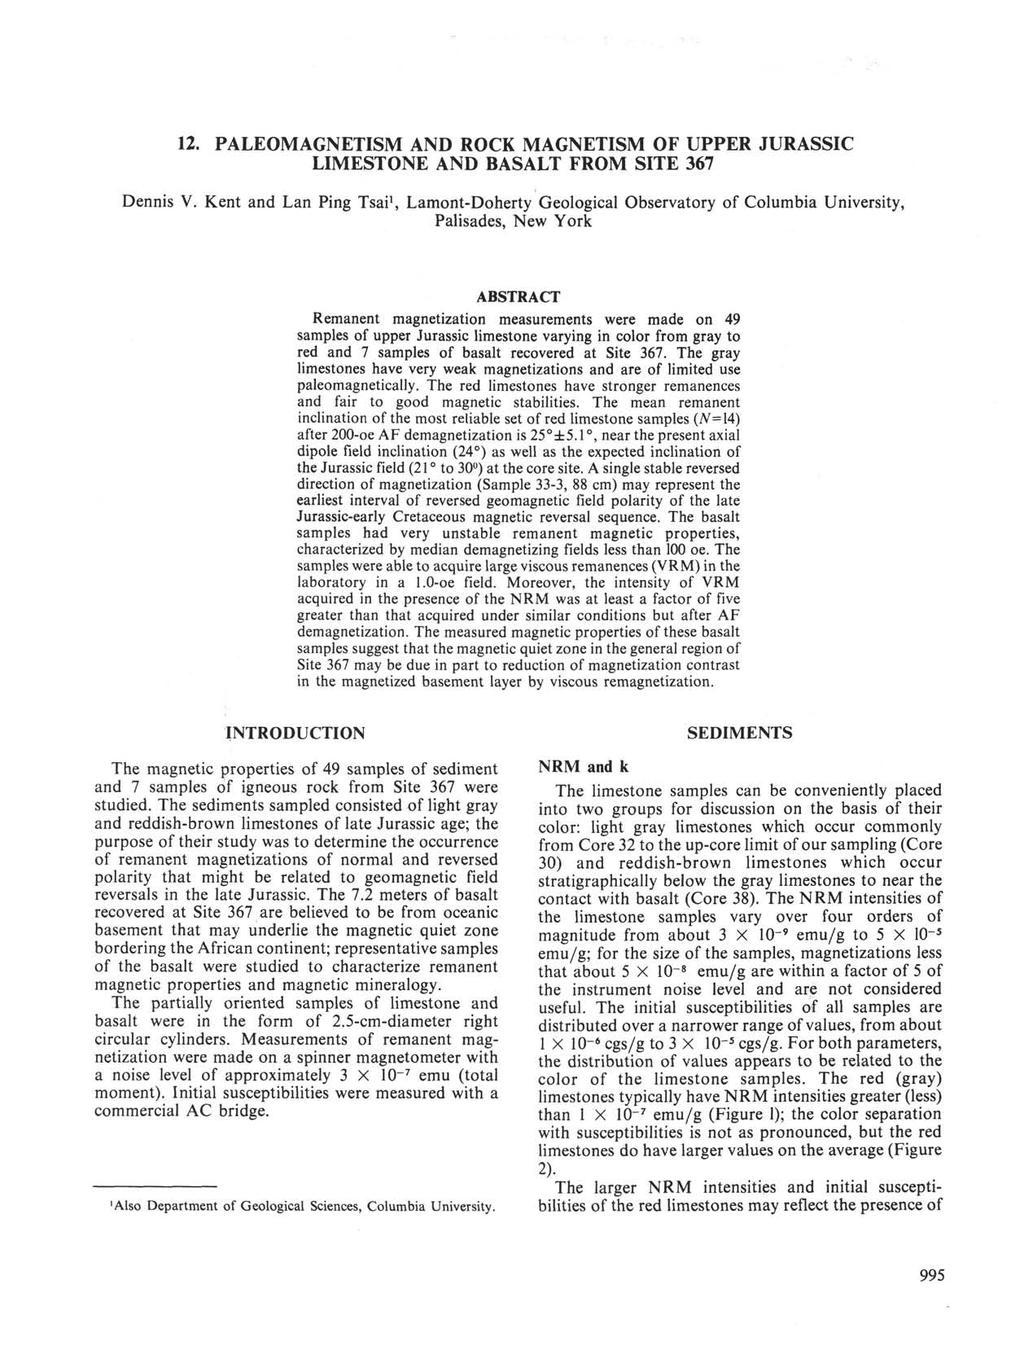 . PALEOMAGNETISM AND ROCK MAGNETISM OF UPPER JURASSIC LIMESTONE AND BASALT FROM SITE 367 Dennis V.